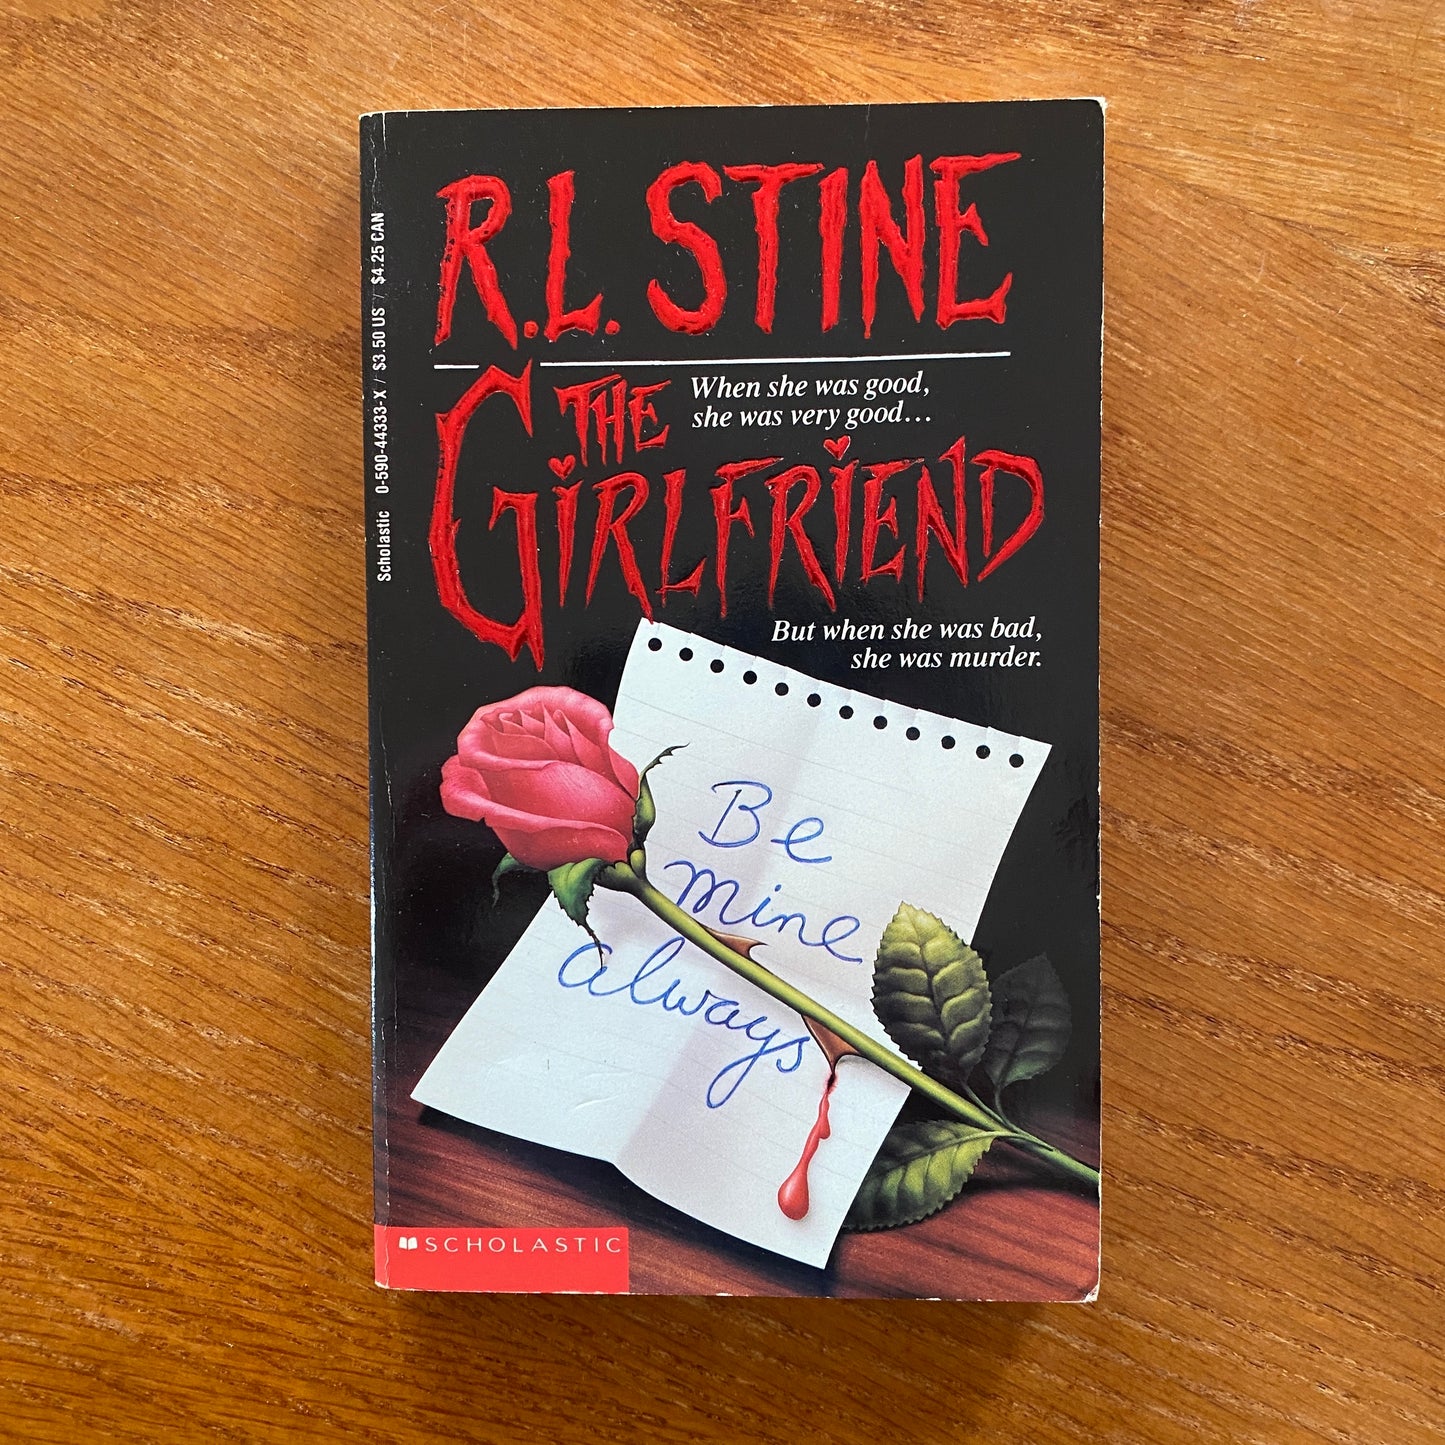 R.L Stine - The Girlfriend